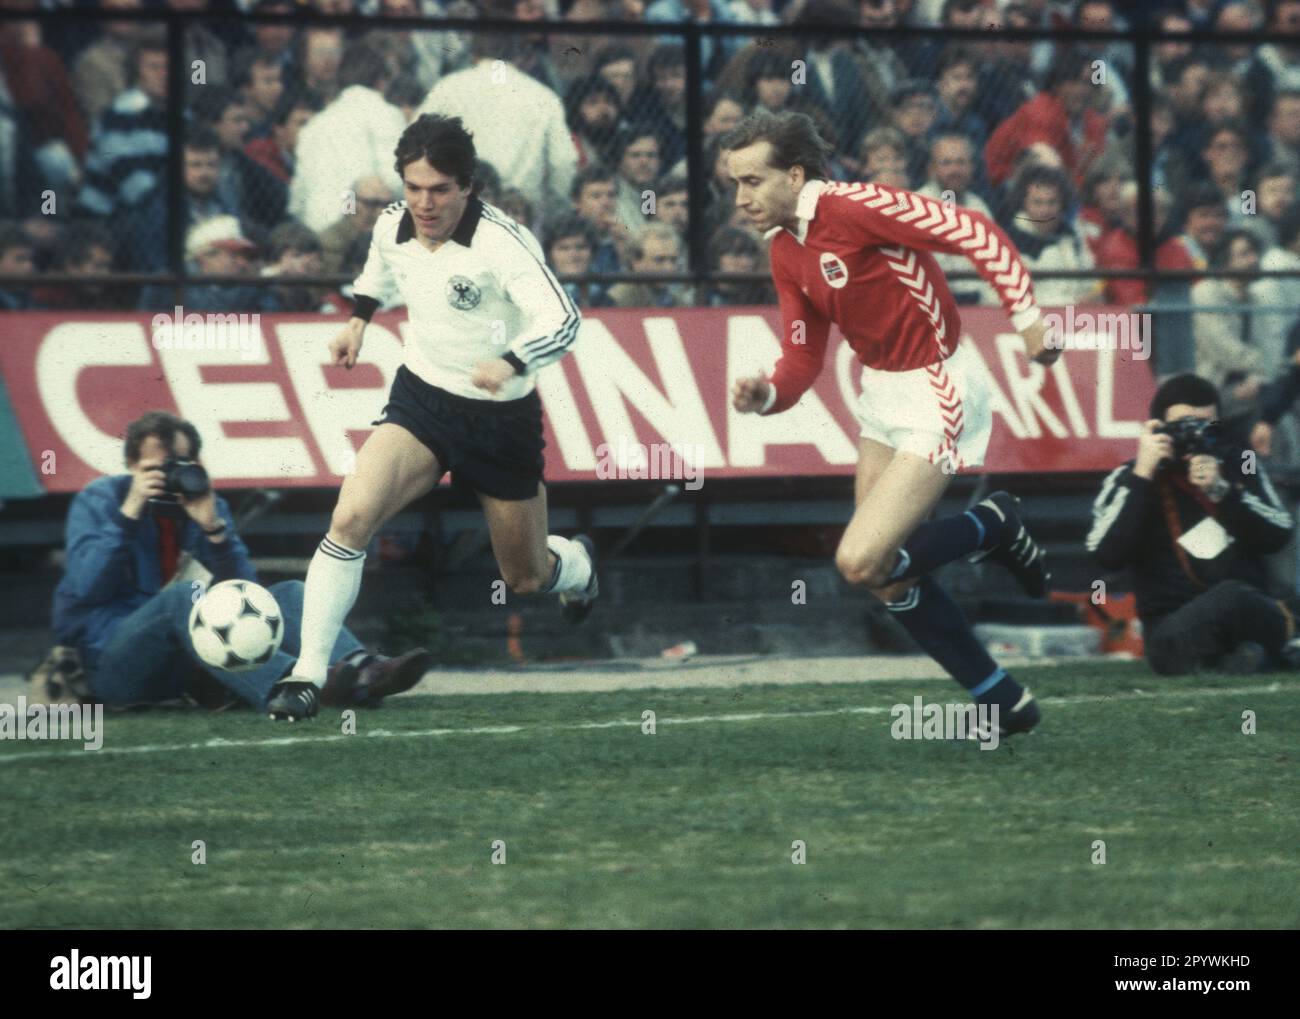 Partita internazionale di calcio: Norvegia - Germania 2:4/12.05.1982 a Oslo. Lothar Matthäus (Dut.) azione sulla palla. Solo per uso giornalistico! Solo per uso editoriale! [traduzione automatica] Foto Stock